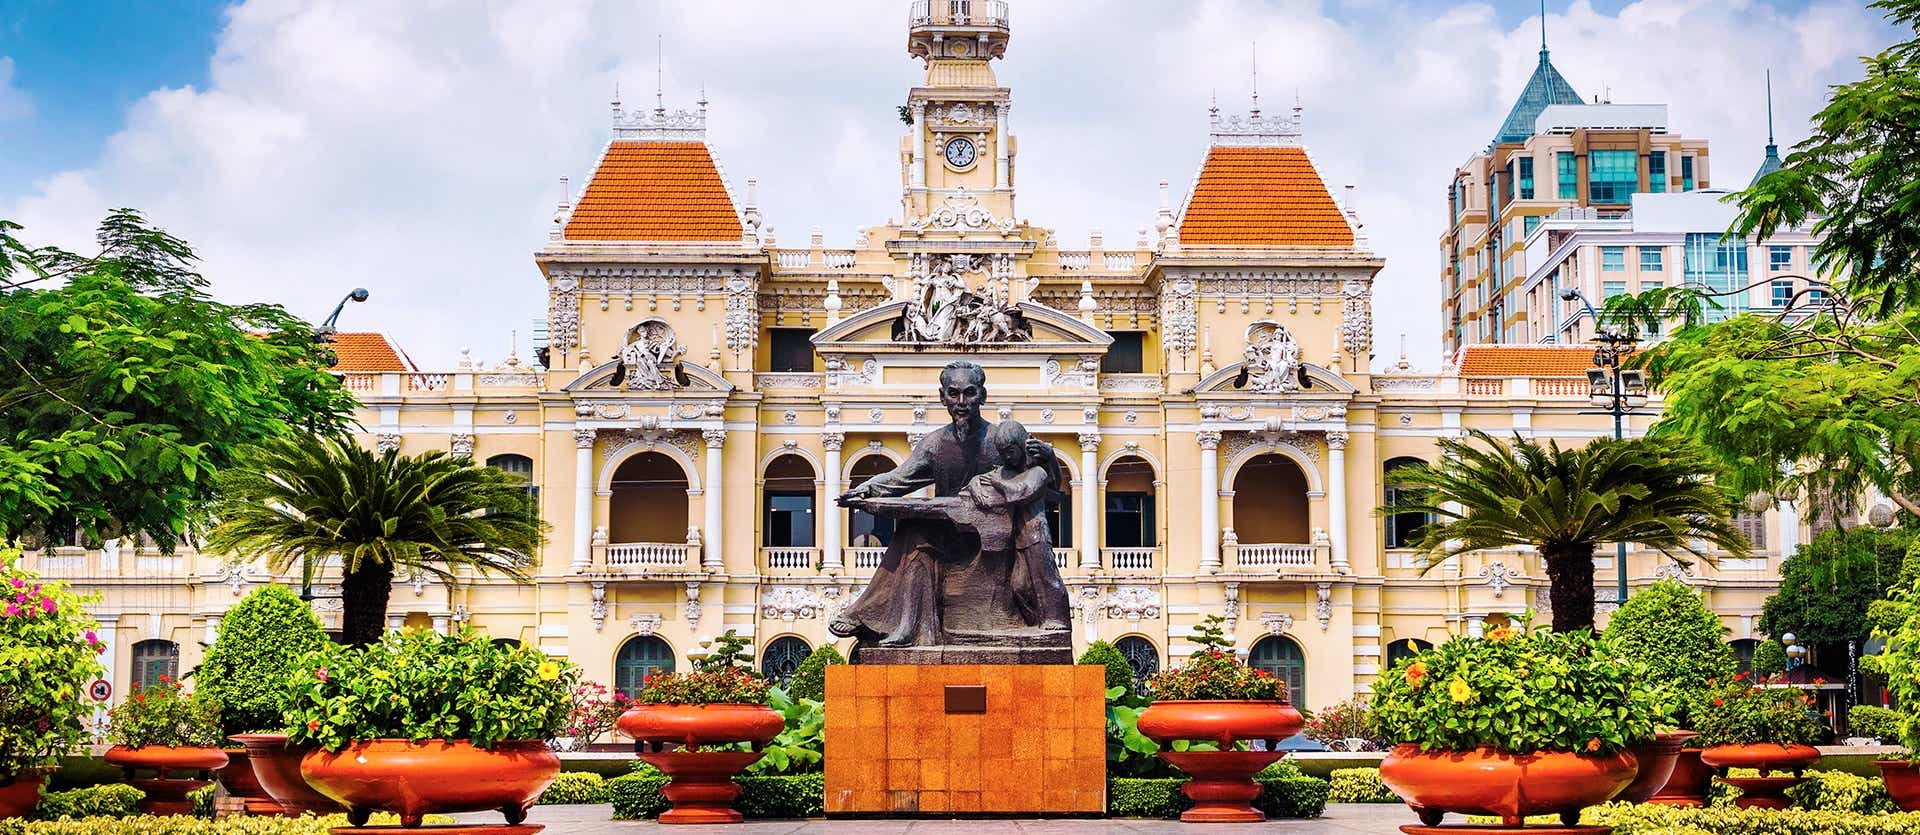 City Hall <span class="iconos separador"></span> Ho Chi Minh